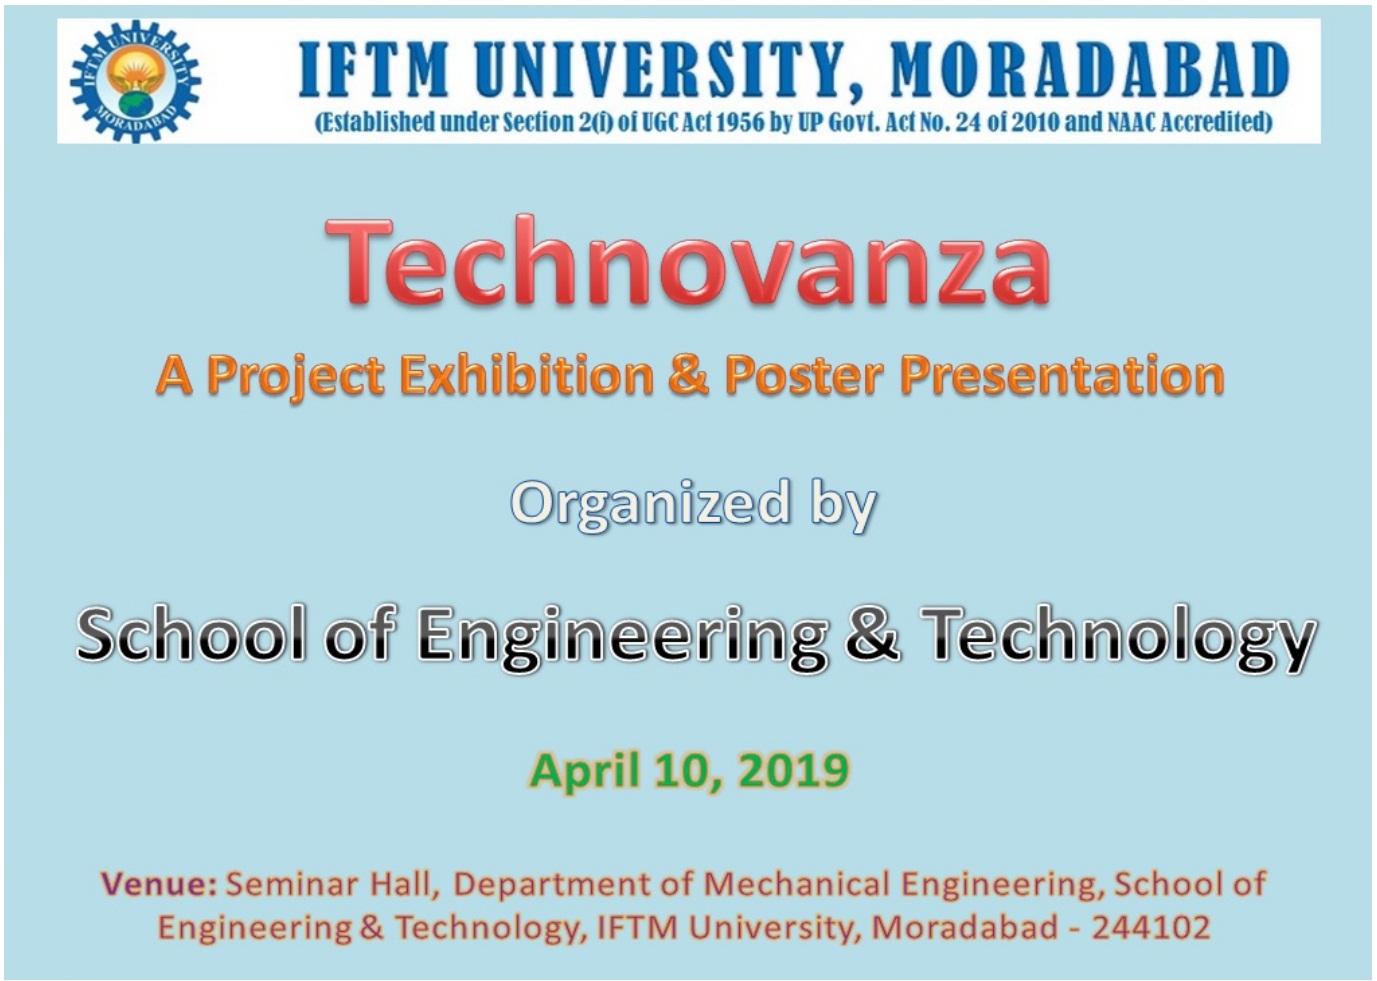 Technovanza-Project Exhibition & Poster Presentation